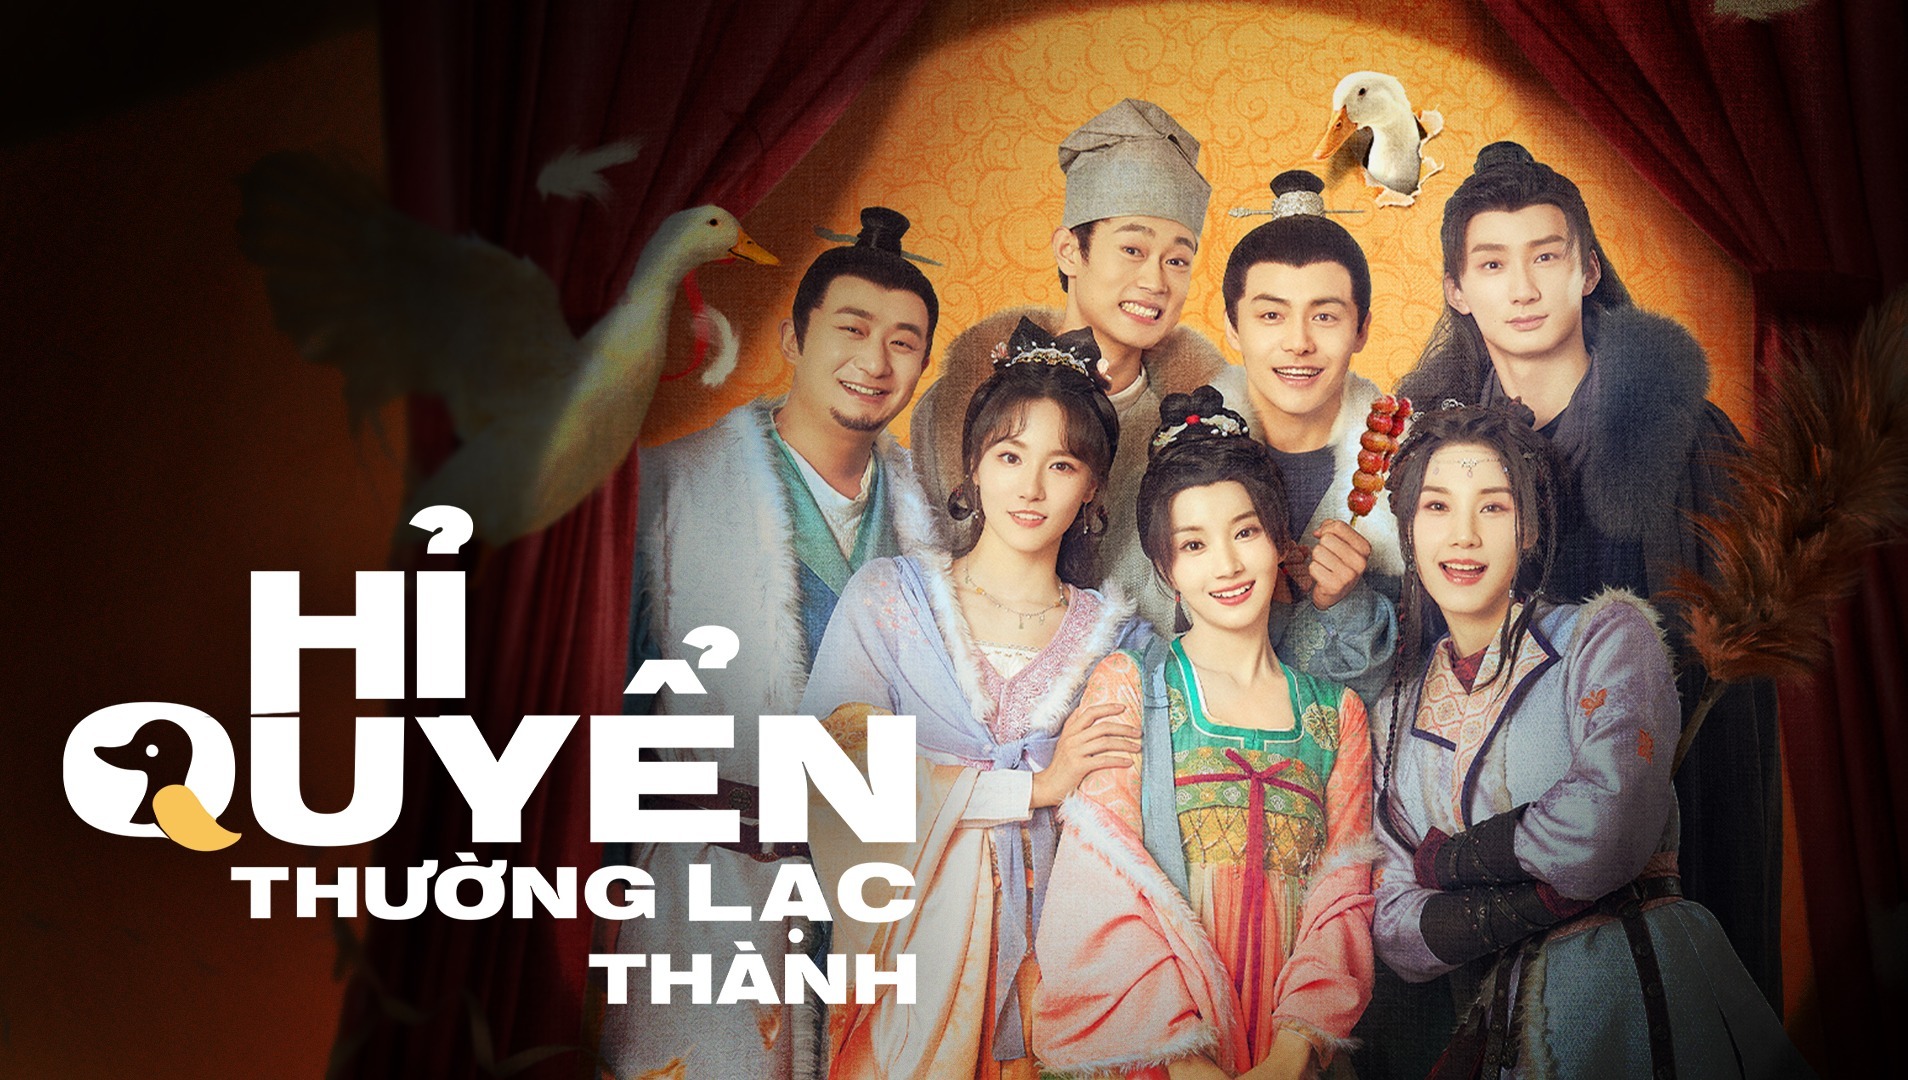 Xem Phim Hỉ Quyển Thường Lạc Thành (The Happy Seven in Changan)